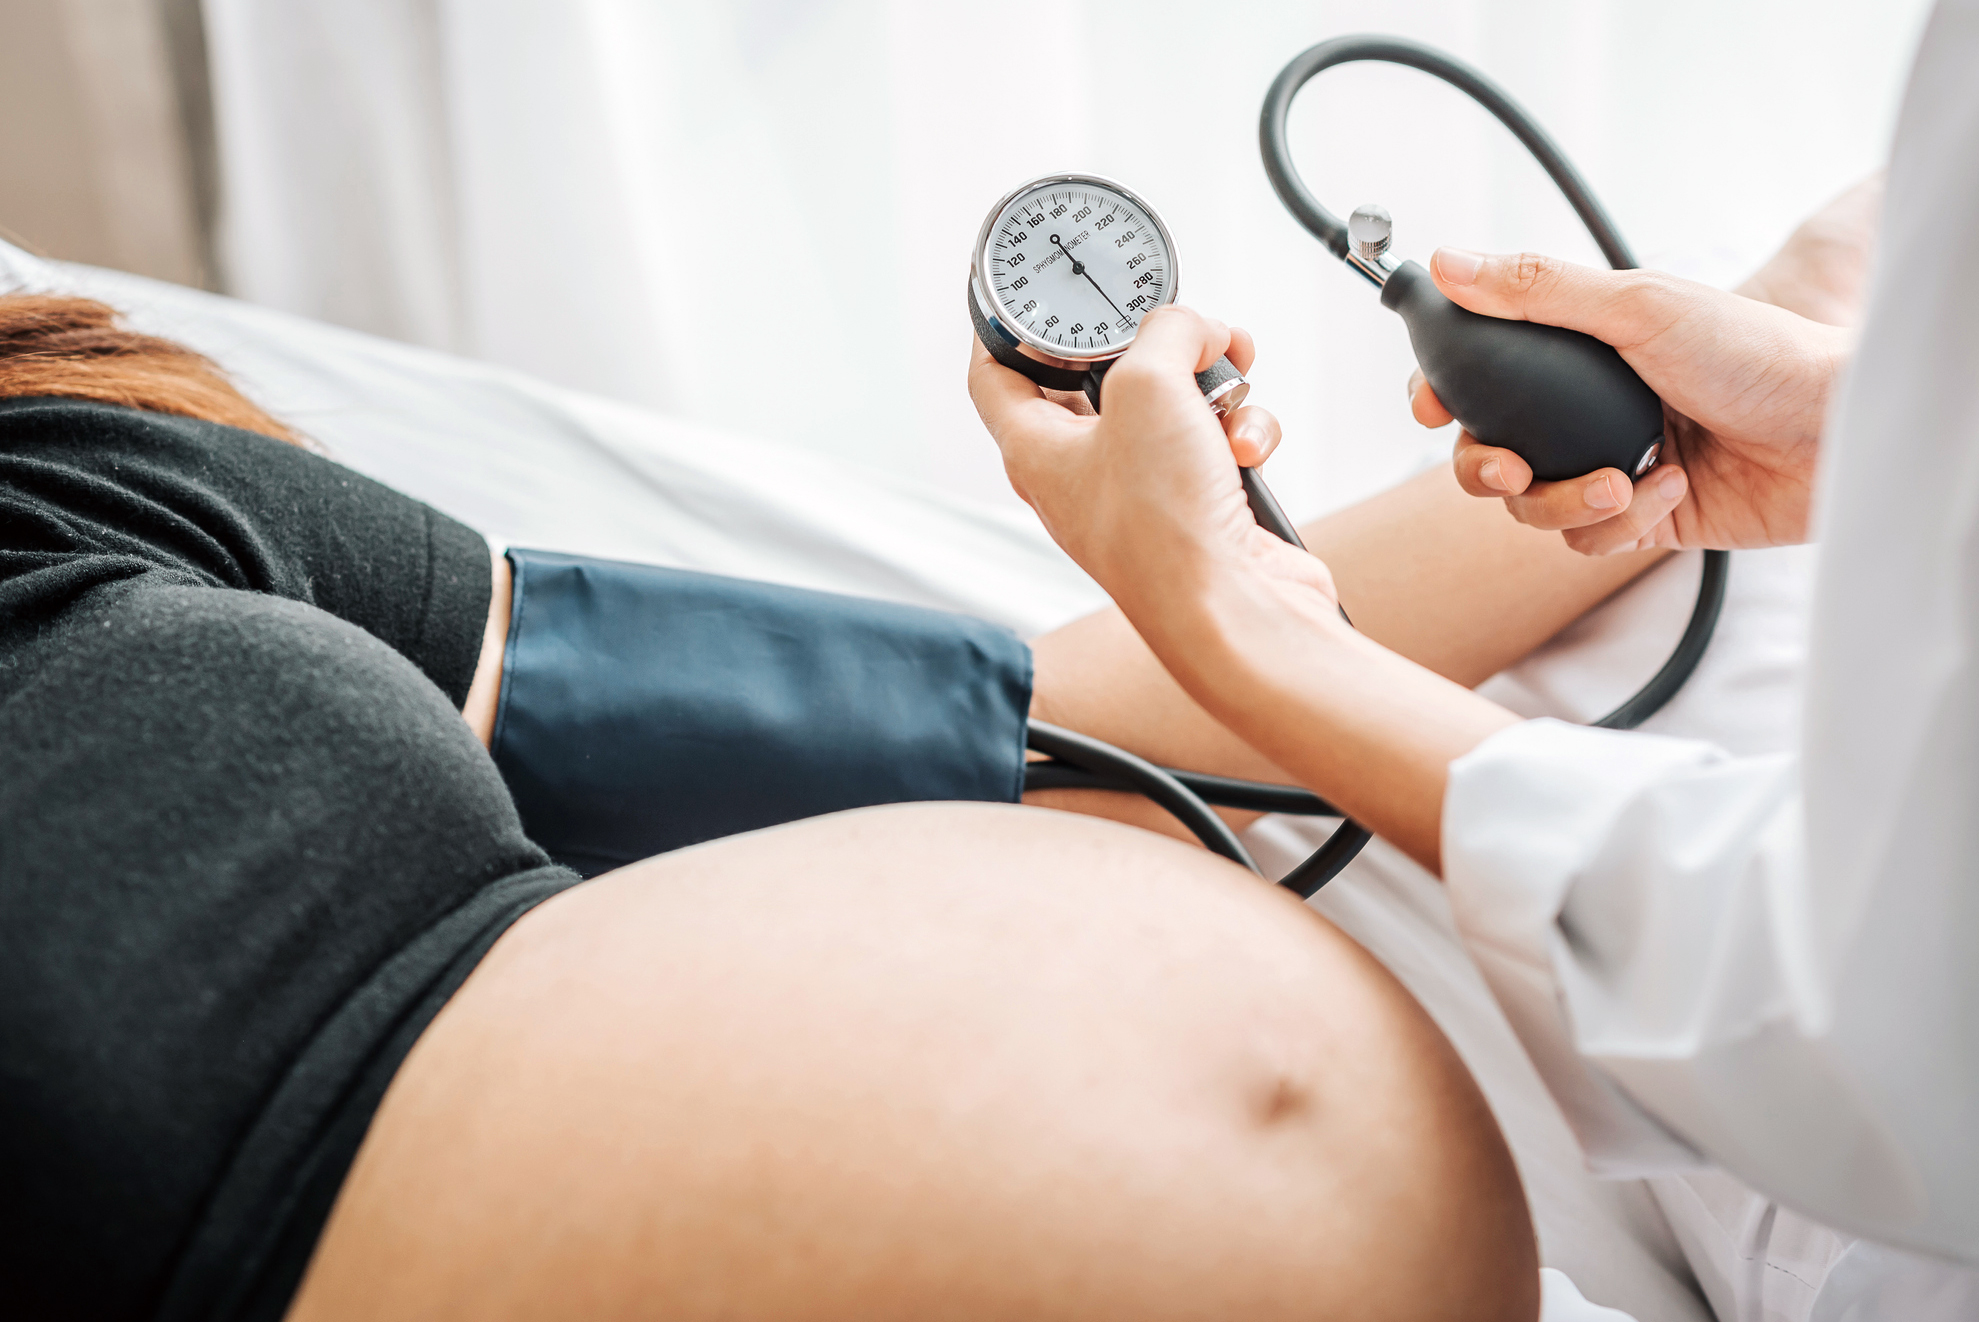 La hipertensión durante el embarazo aumenta el riesgo de sufrir enfermedades cardiovasculares